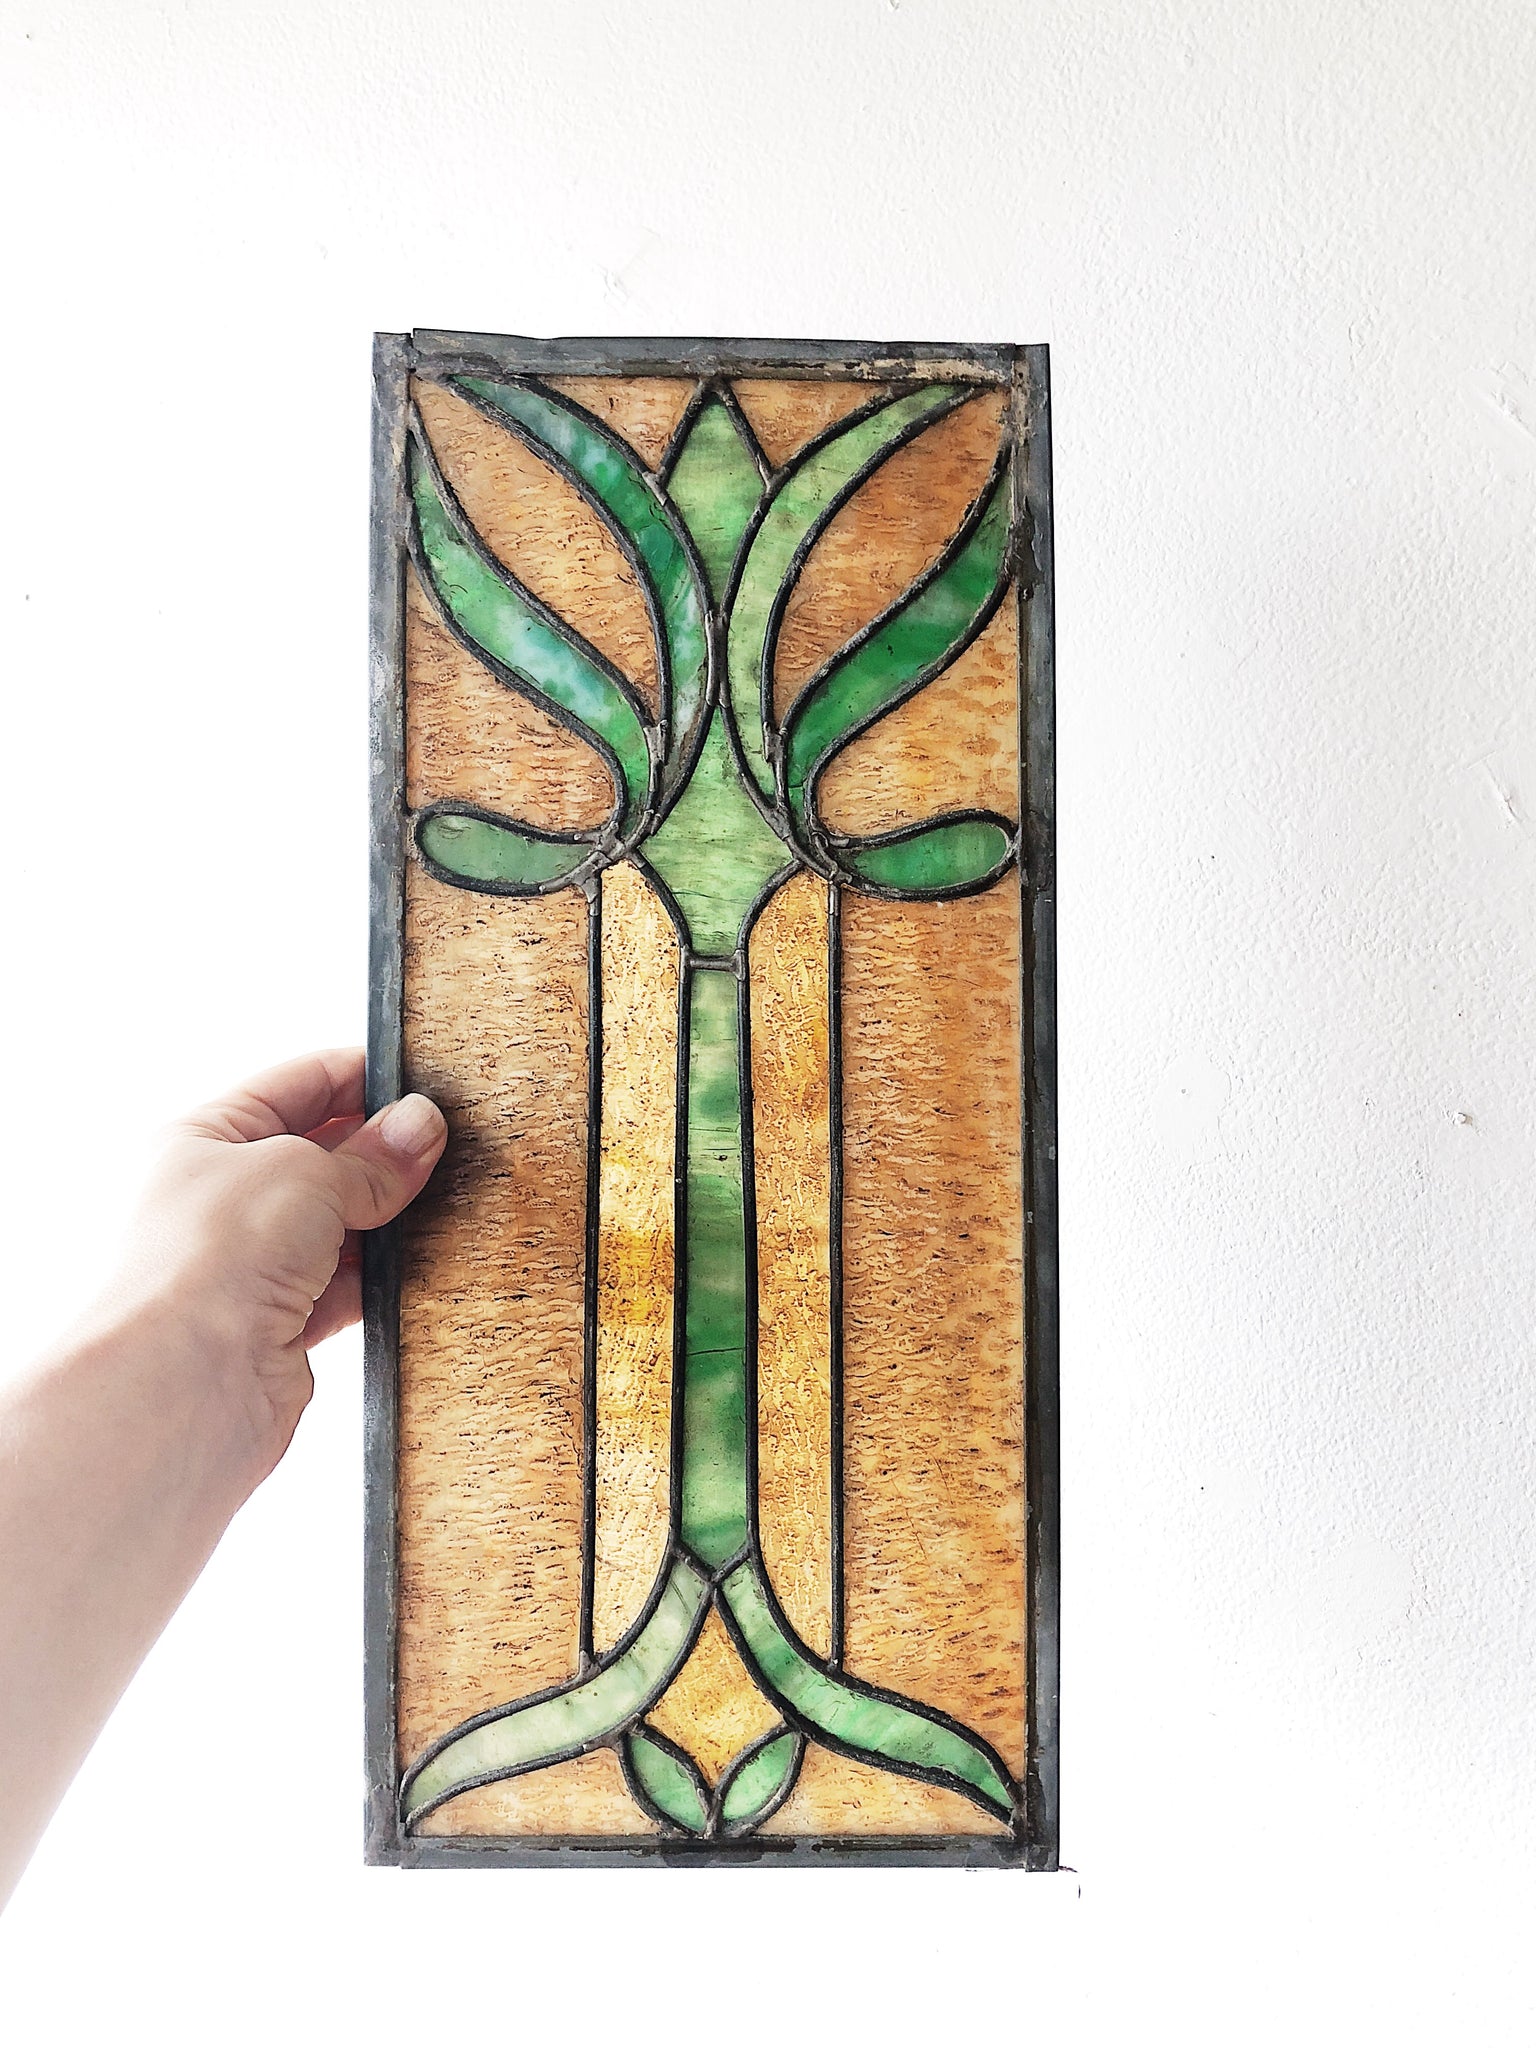 Antique Art Nouveau Stained Glass Panel